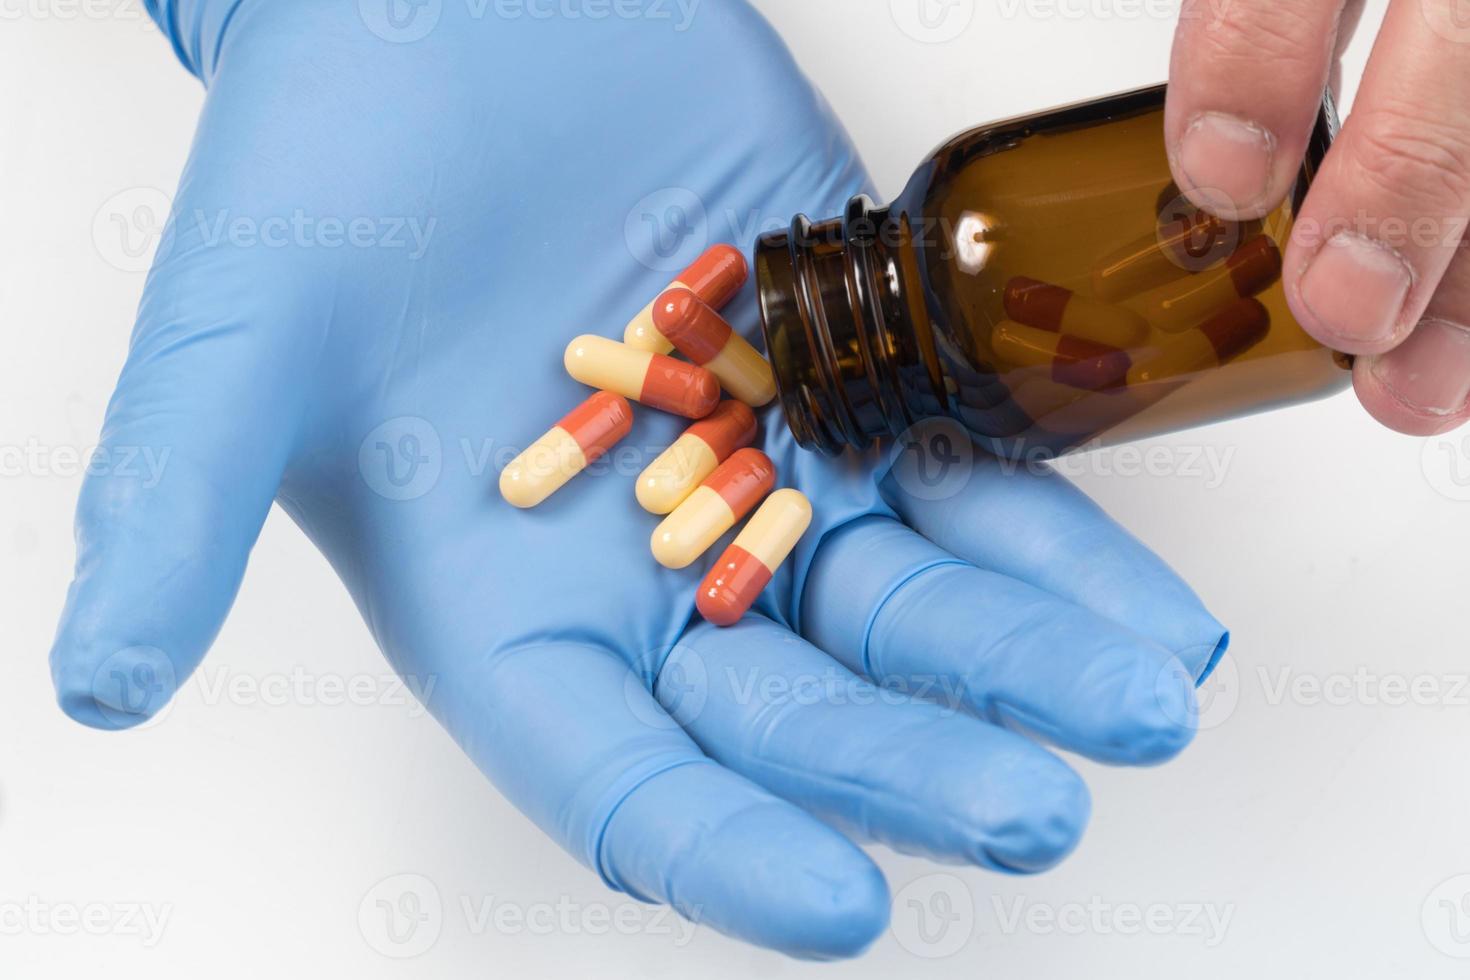 tabletten en chirurgische handschoen foto